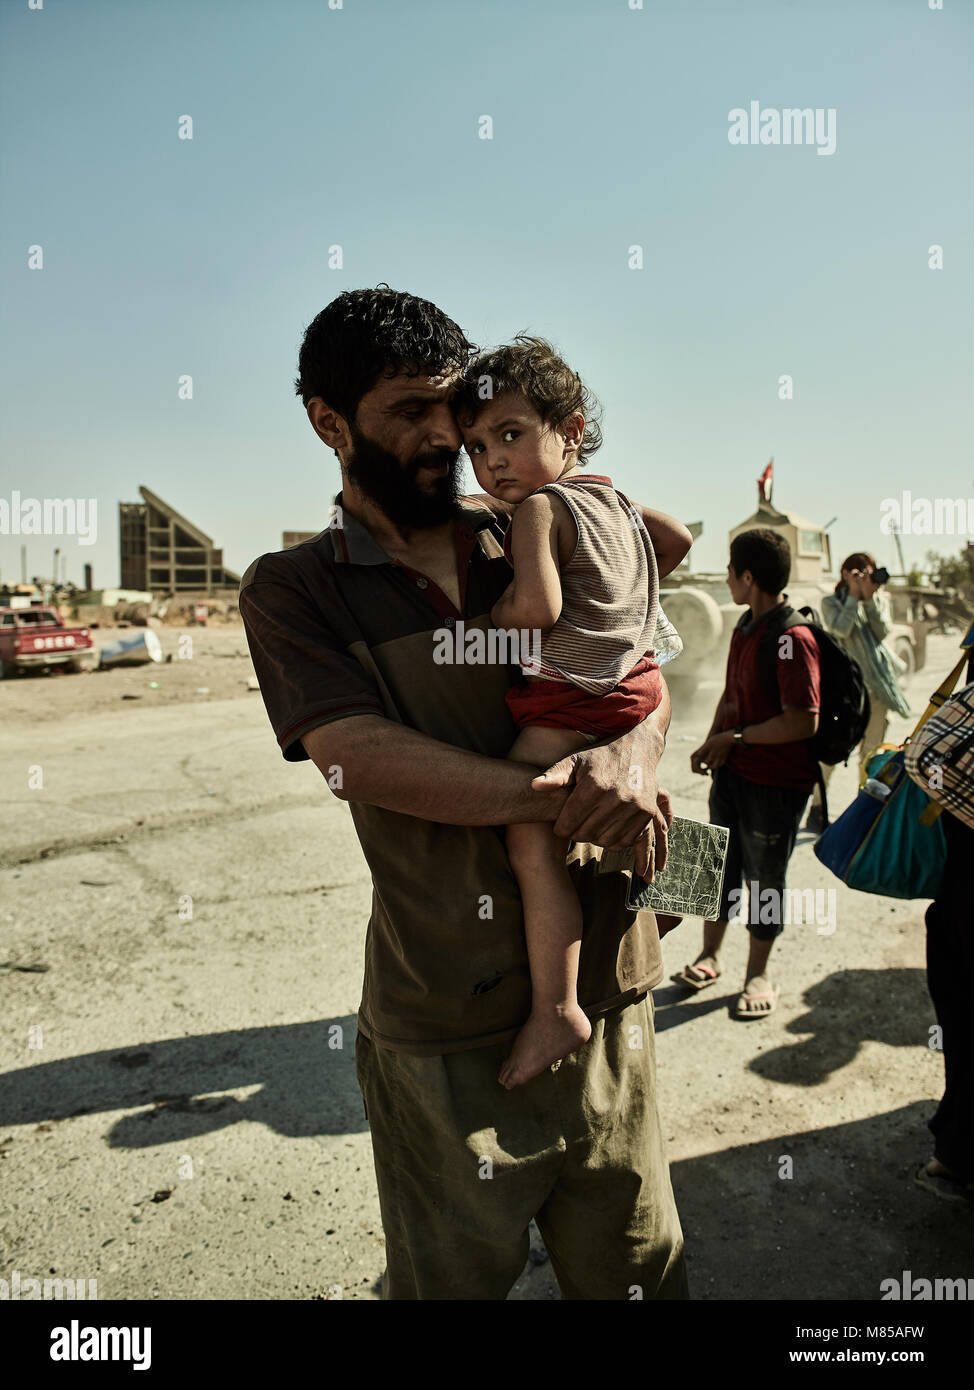 Ein Vater und eine Tochter warten für einen Krankenwagen an einem Kontrollpunkt in Mossul. Die Stadt Mosul im Nordirak hat unter islamischen Staat militanten wurde für 3 Jahre, seit Juni 2014. Im Juli 2017 die Streitkräfte der Koalition geführt von der irakischen Armee hat endlich befreit die Stadt aus der Hand von Terroristen. Stockfoto